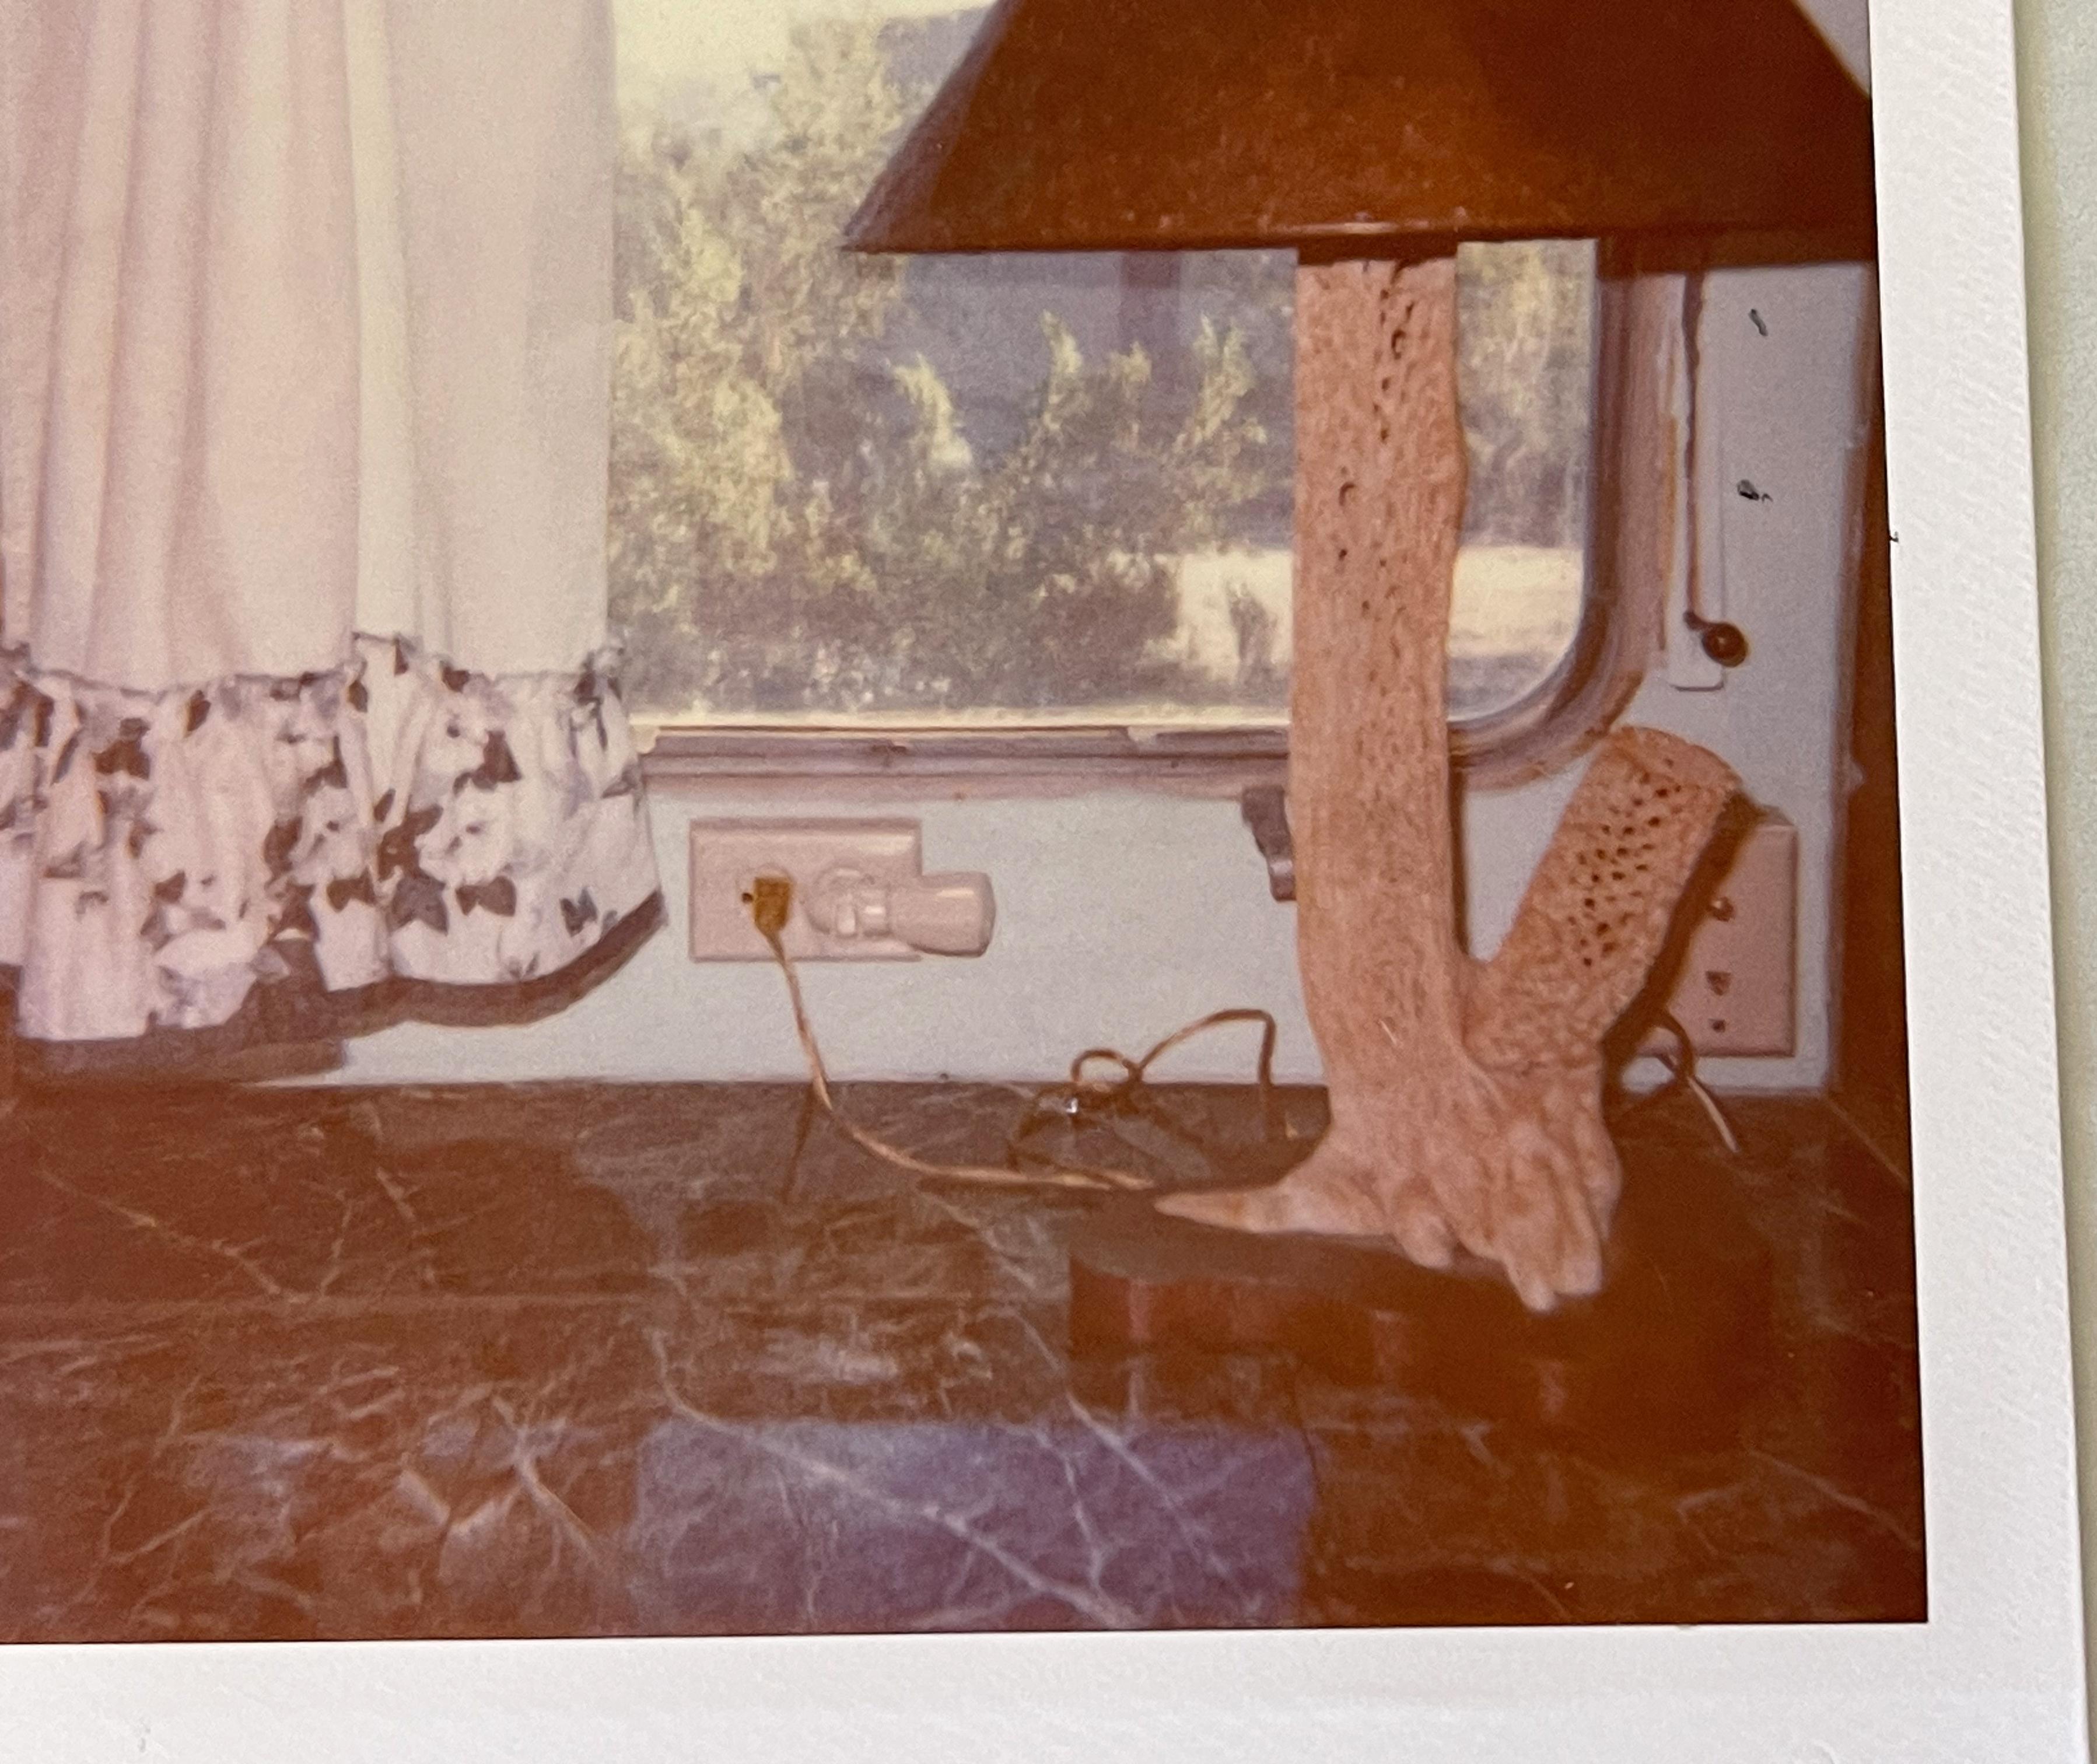 The Lamp (Sidewinder) - Original Polaroid Unique Piece - Contemporary Photograph by Stefanie Schneider